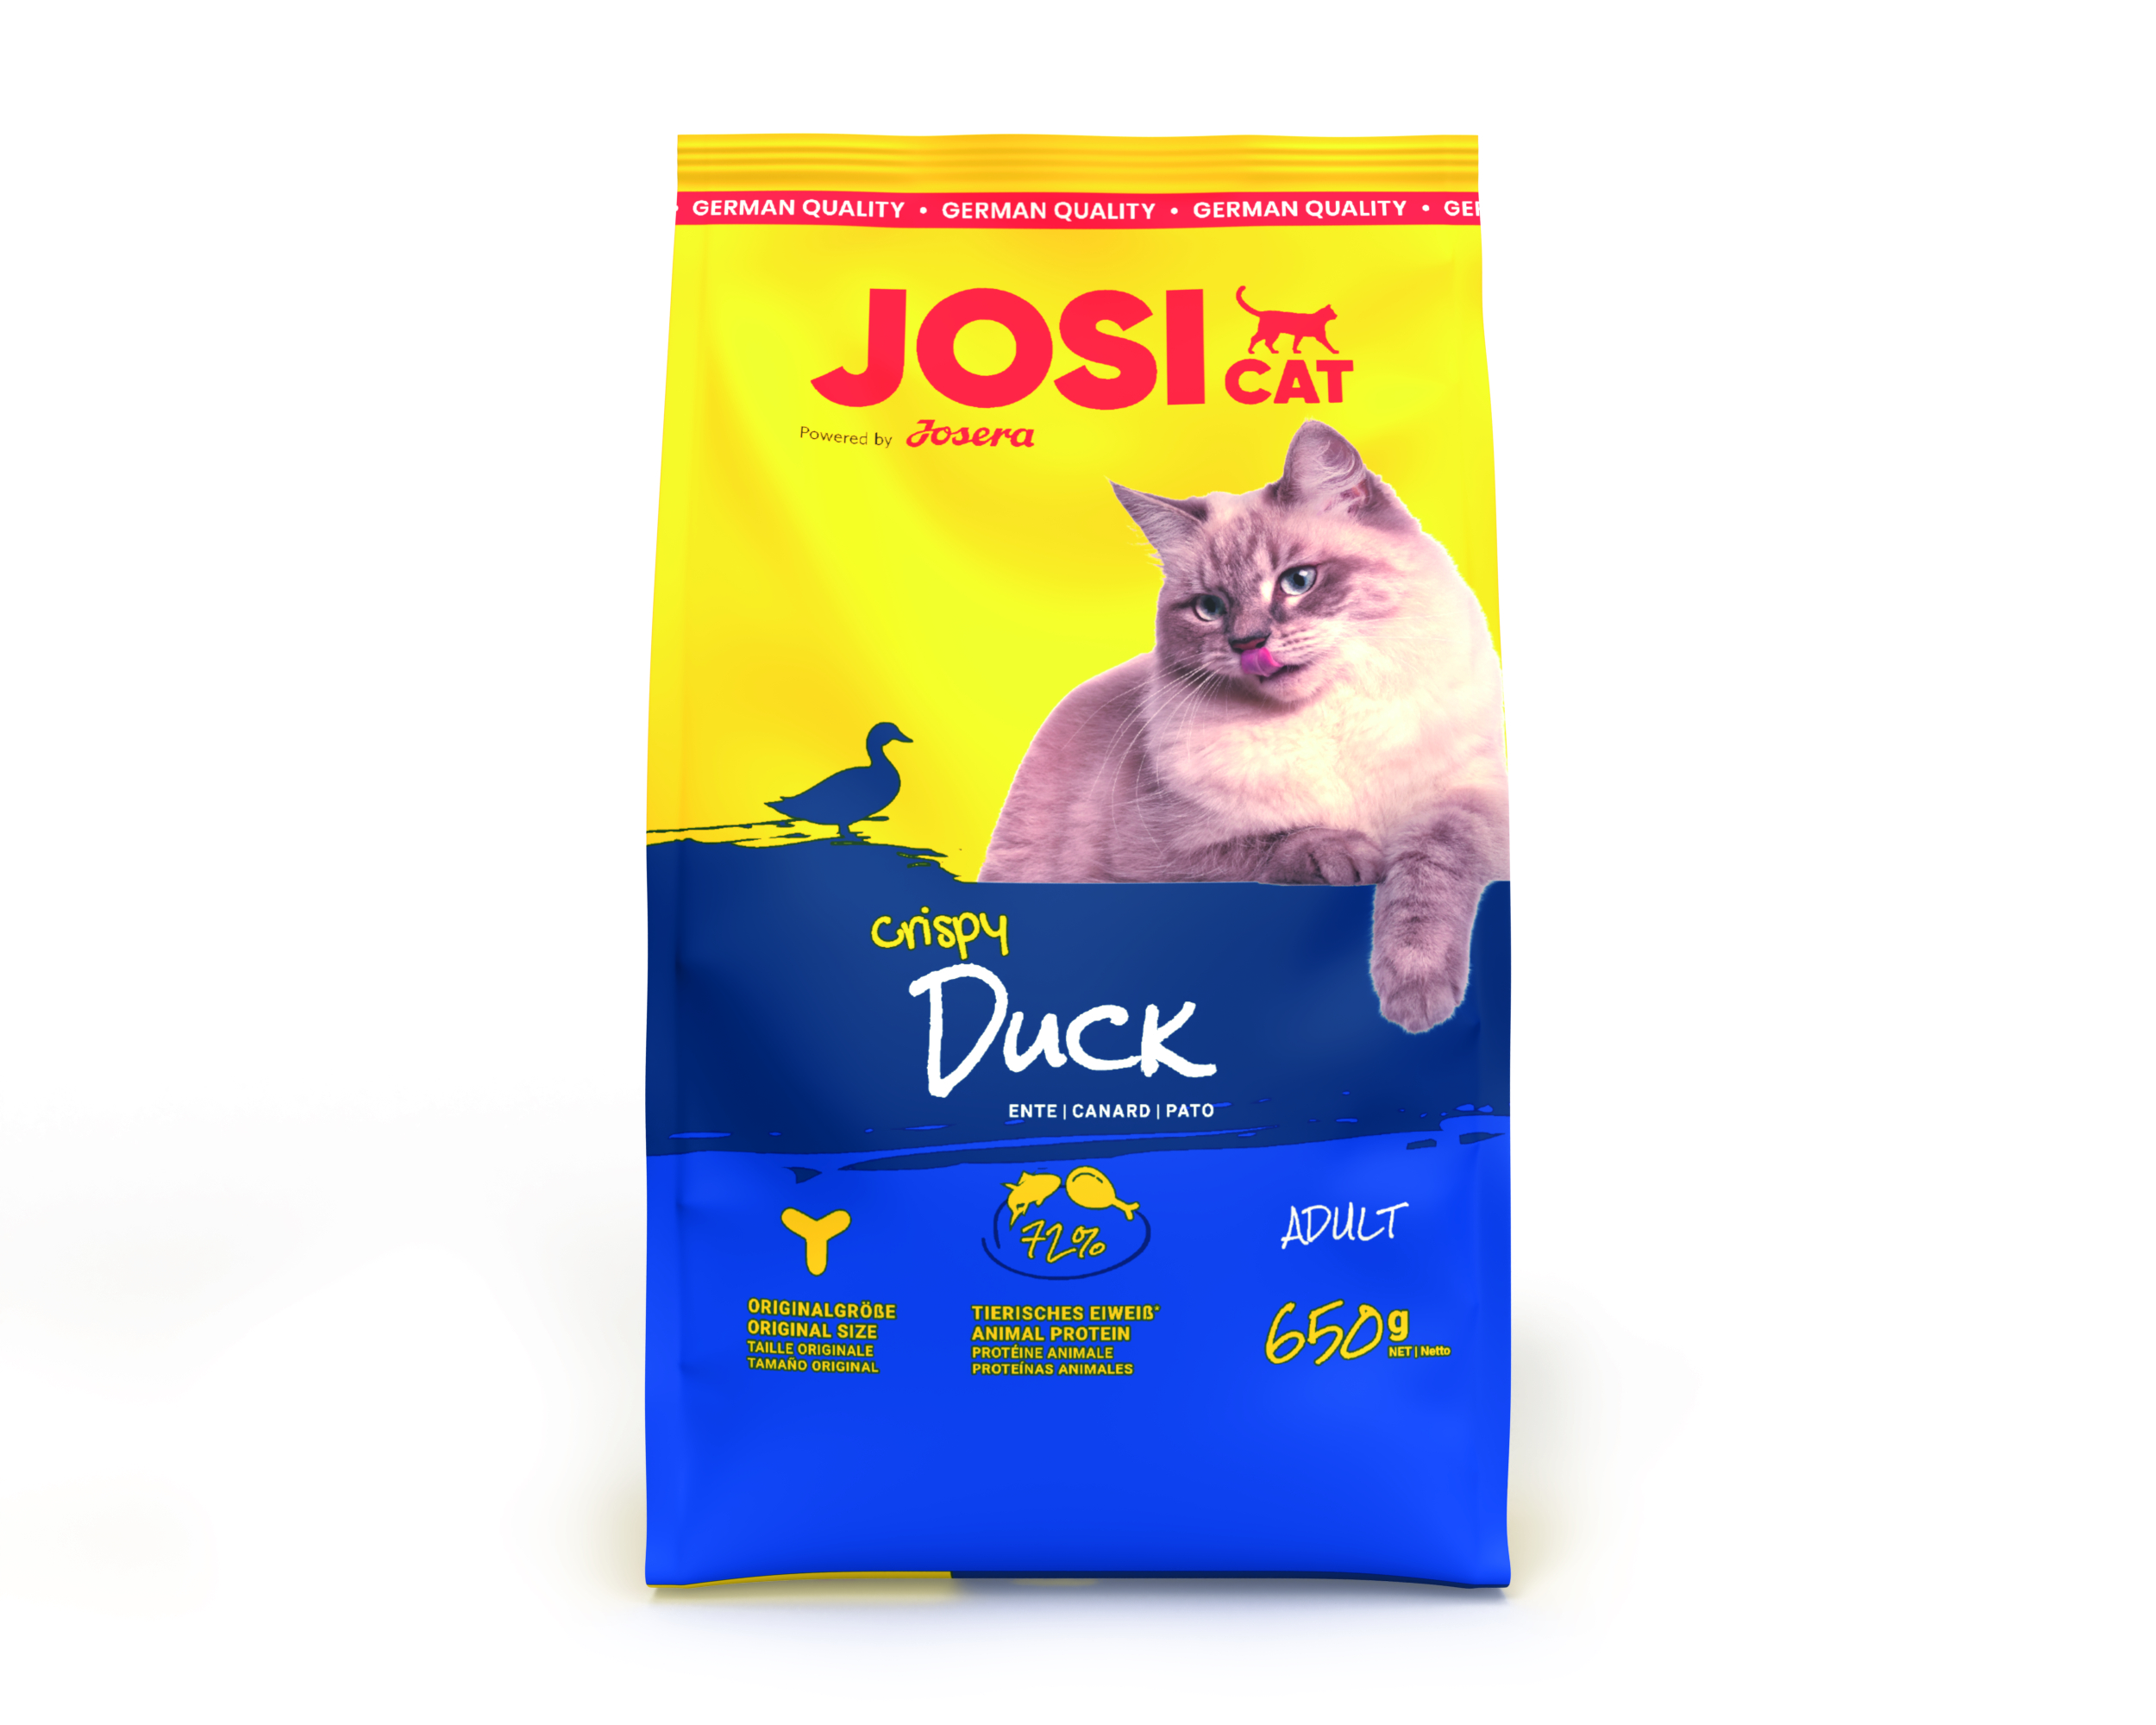 Josera JosiCat Crispy Duck - Der Gaumenschmaus mit köstlicher Ente 650g